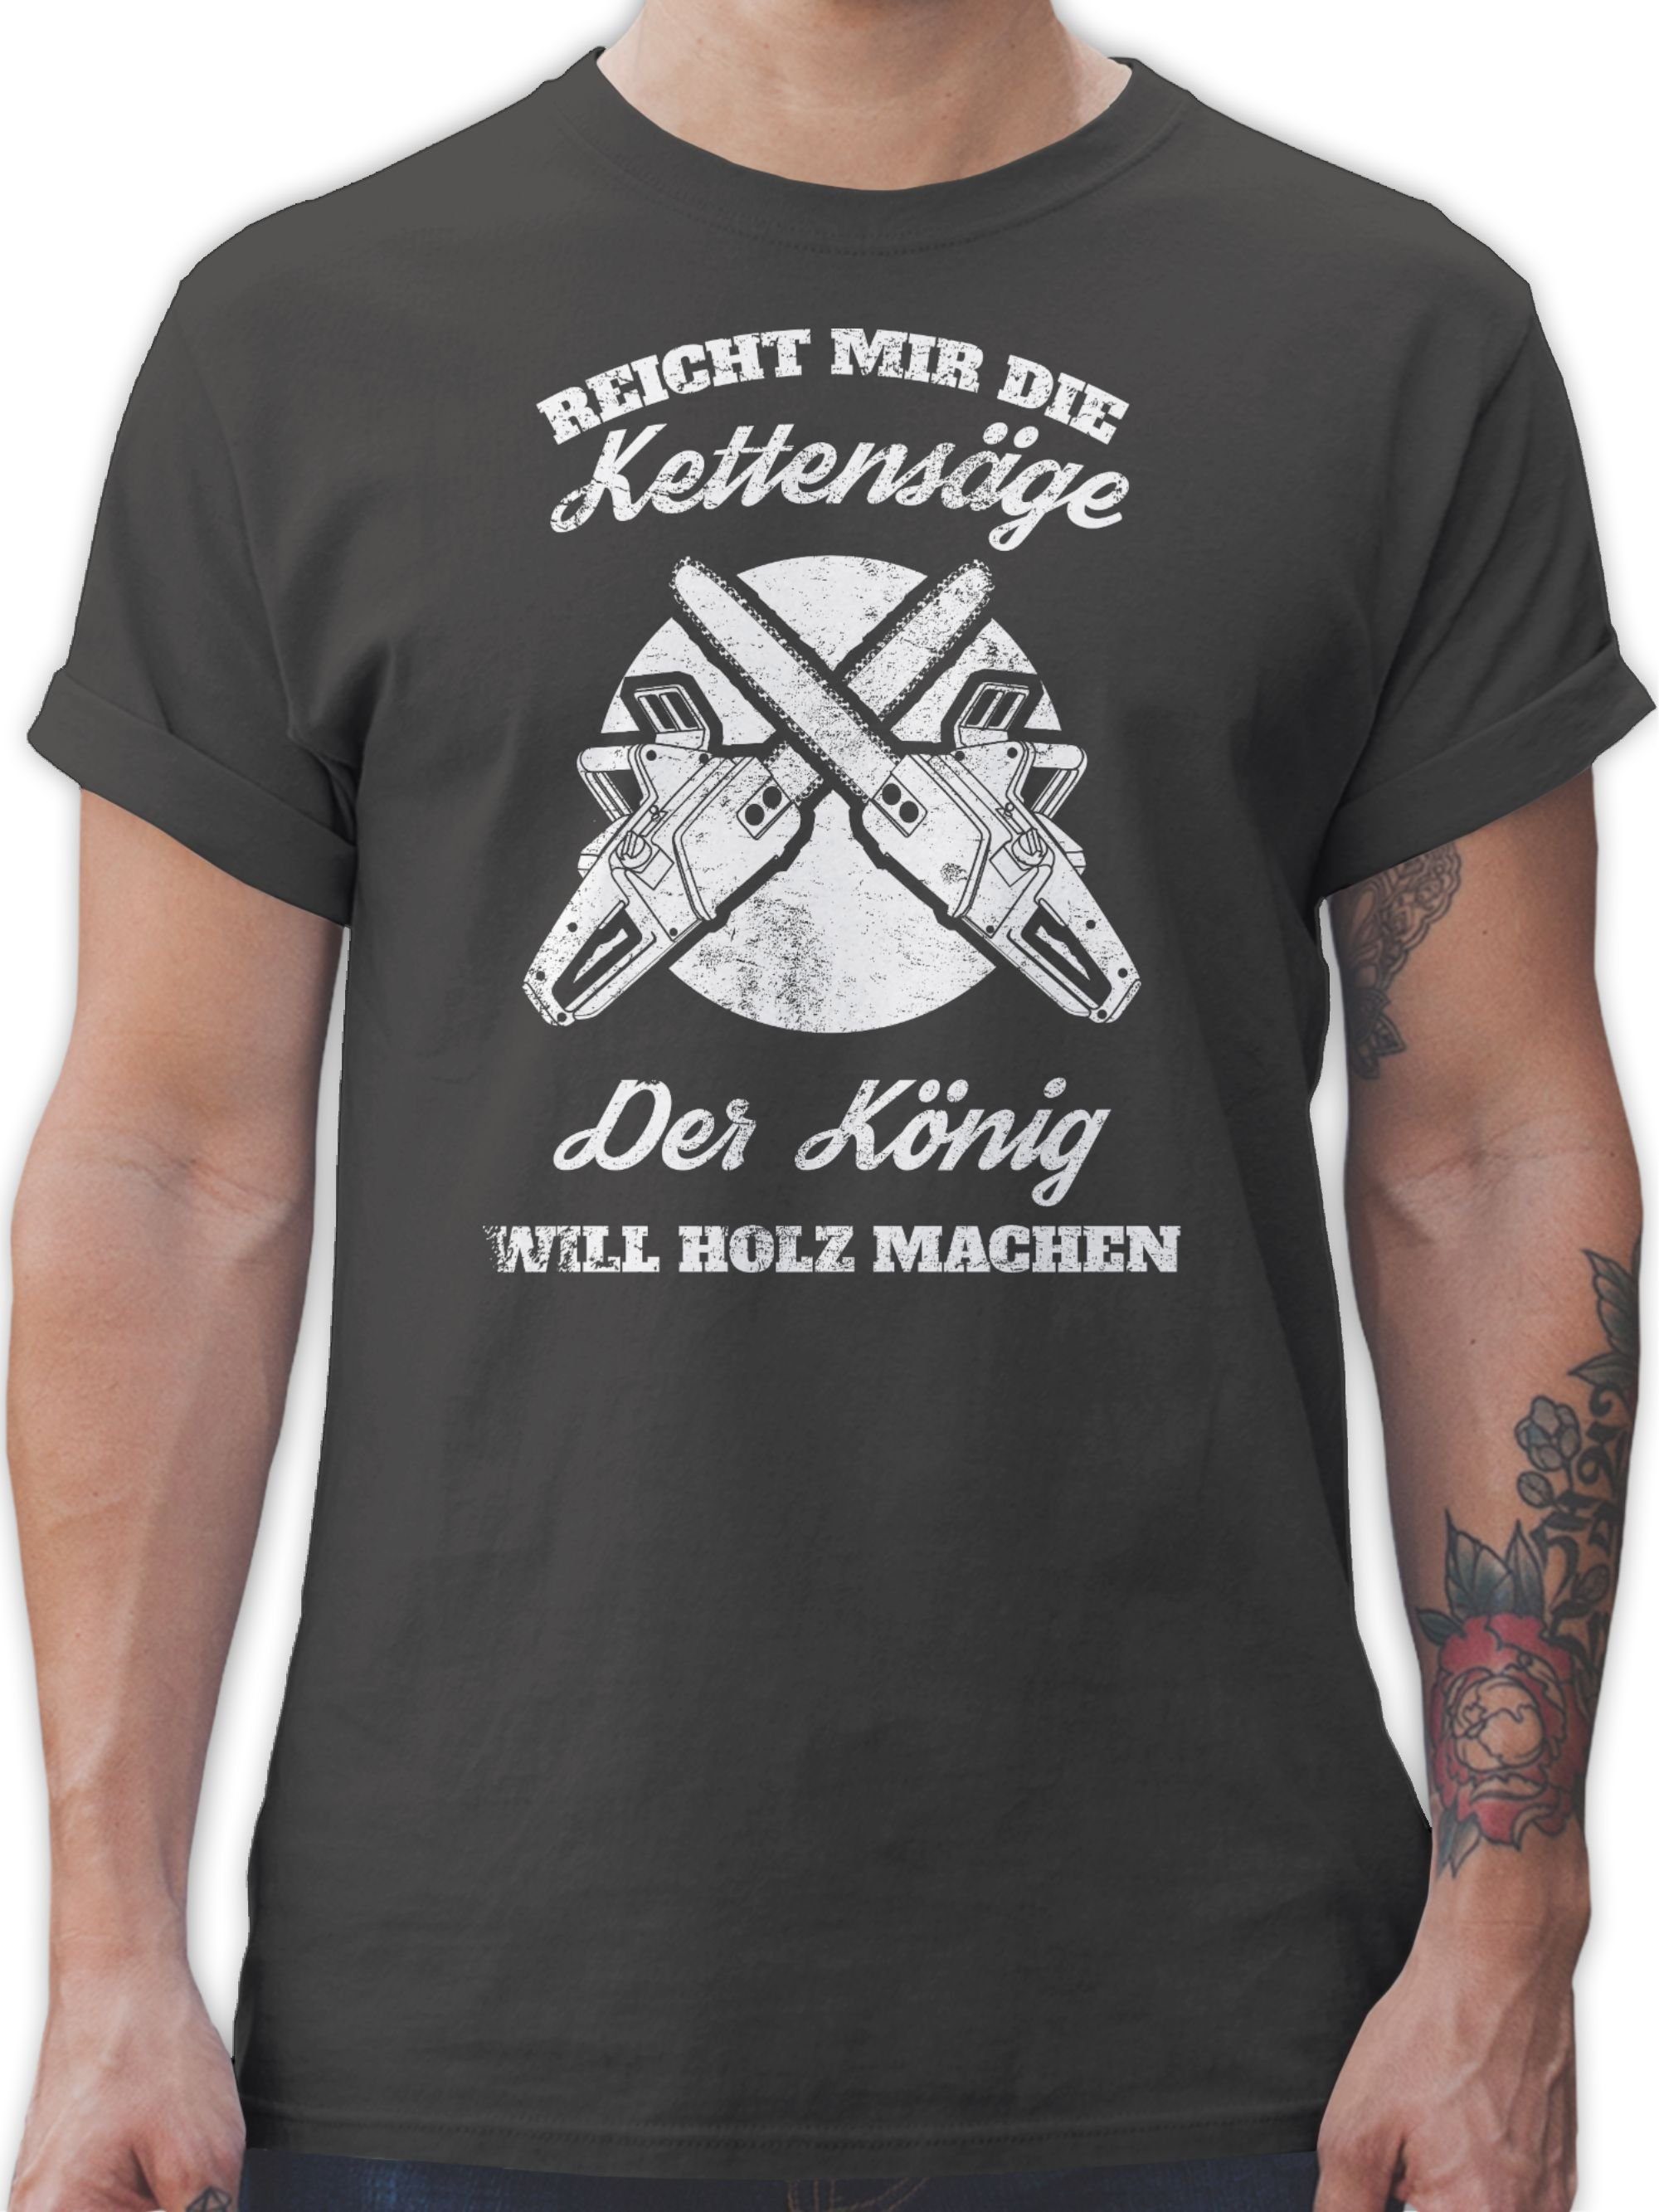 mir Kettensäge T-Shirt Reicht Sprüche die Shirtracer Statement Dunkelgrau 02